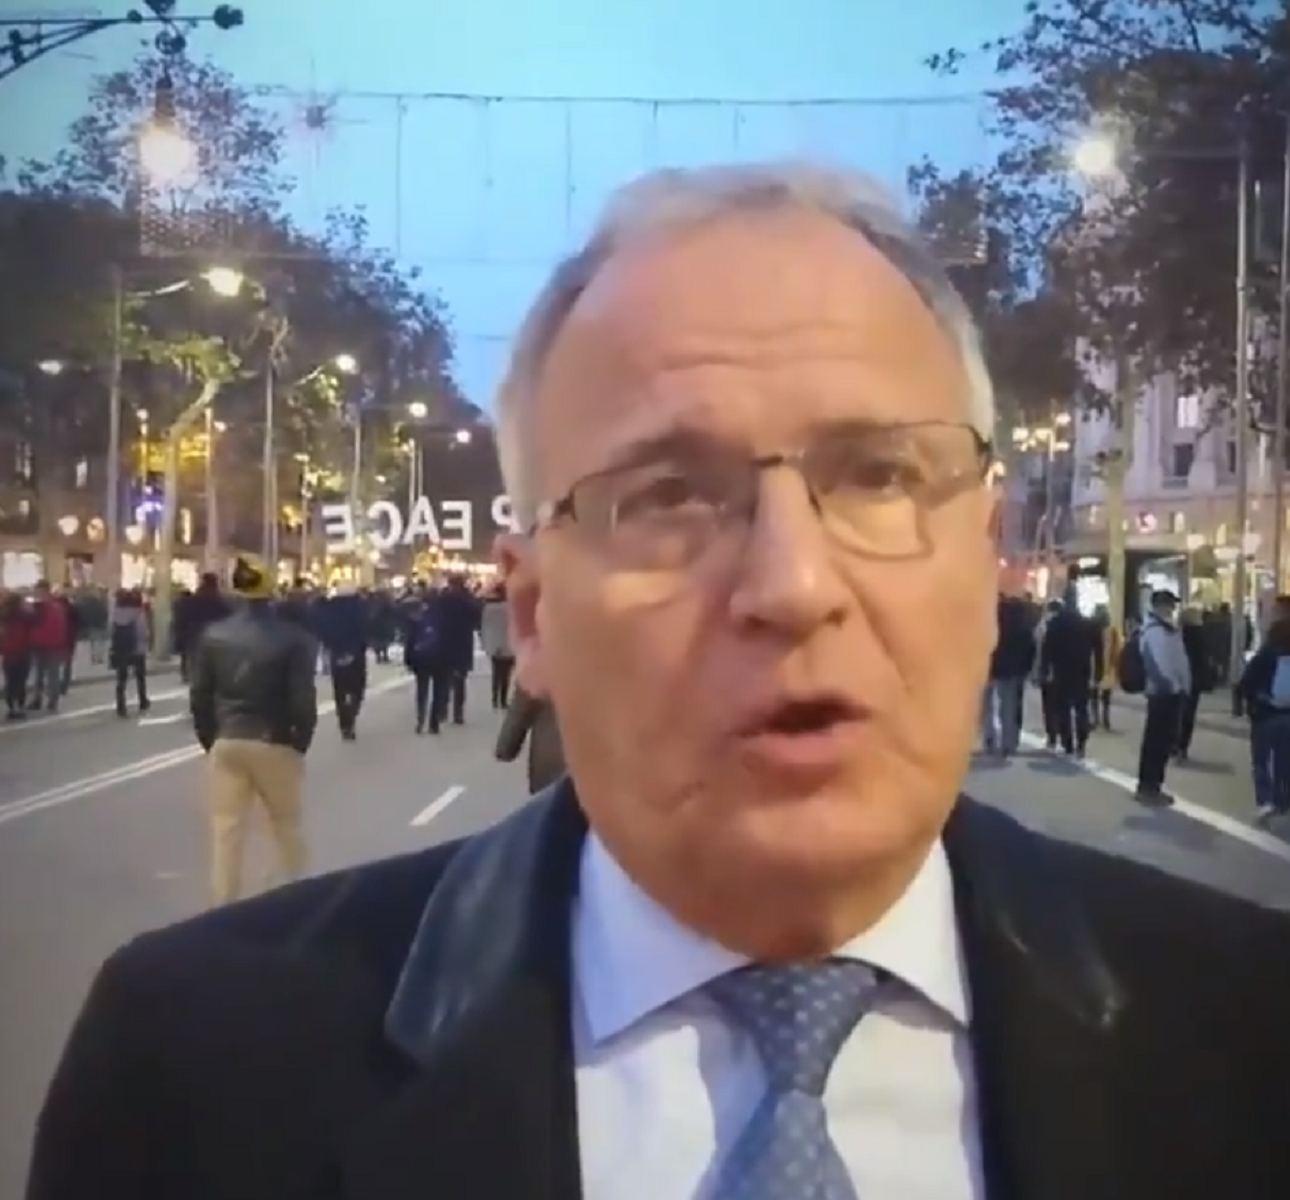 El popular Josep Bou assisteix a la manifestació independentista